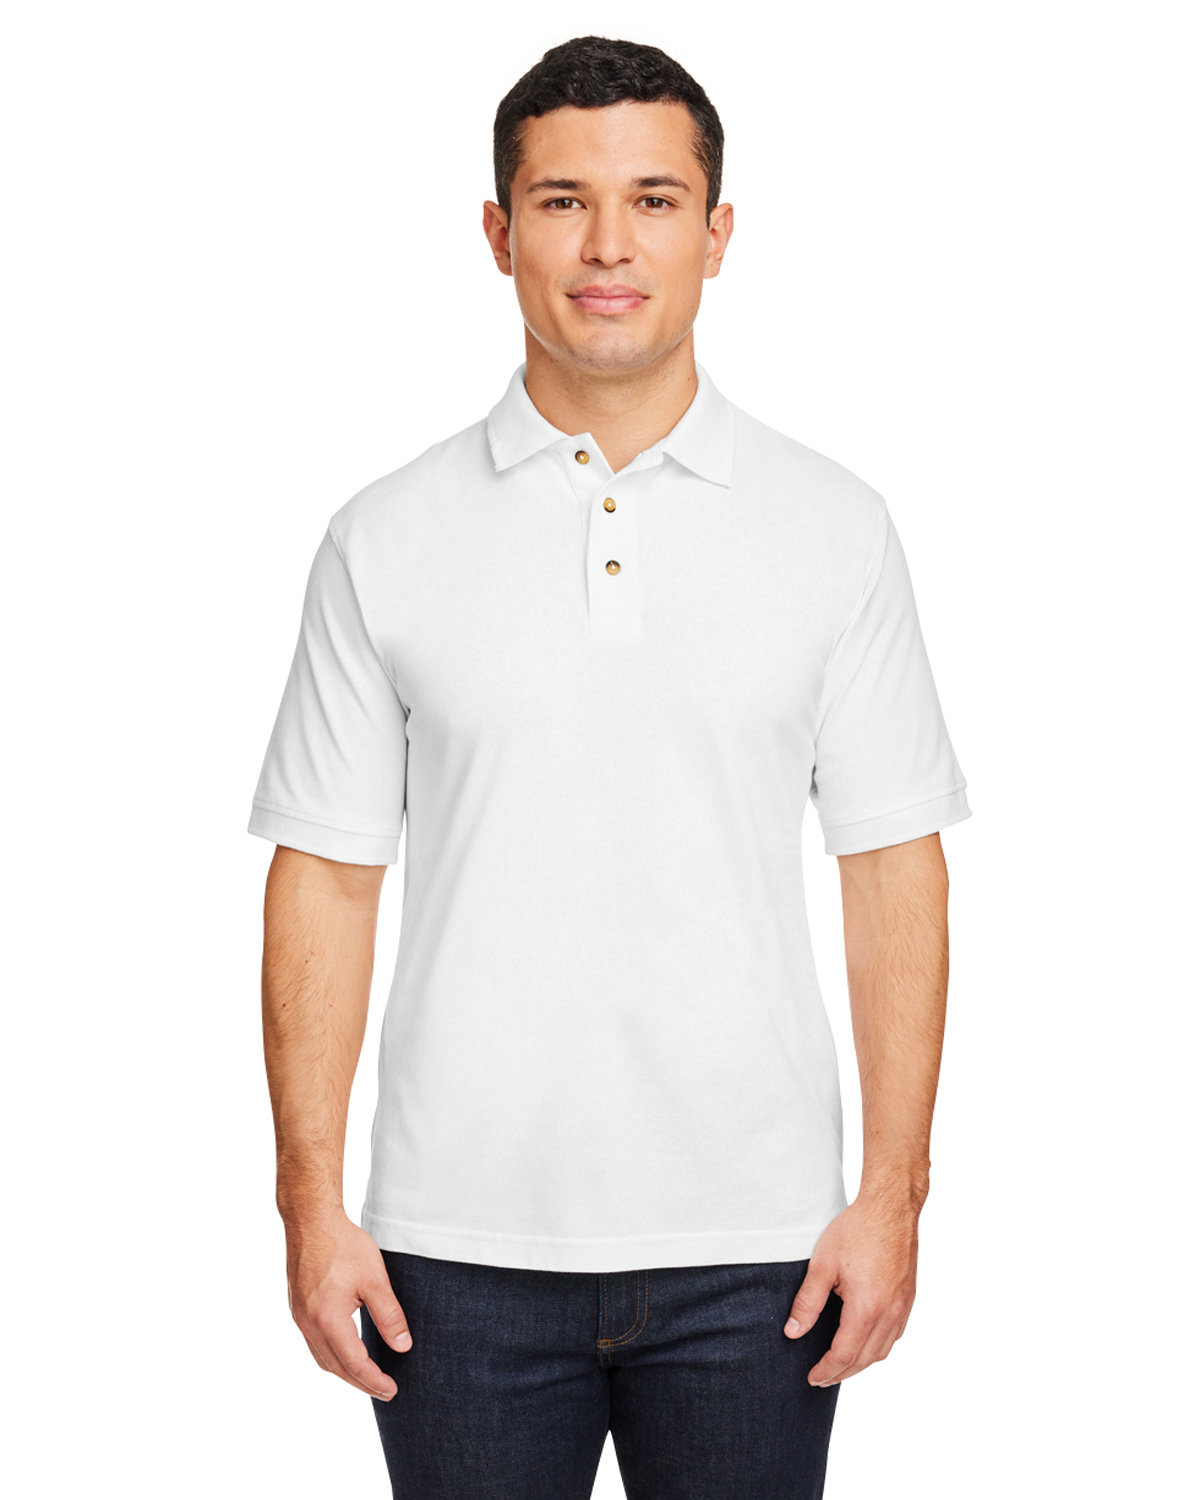 Men's 100% Cotton Short Sleeve Pique Polo Shirt - Quality